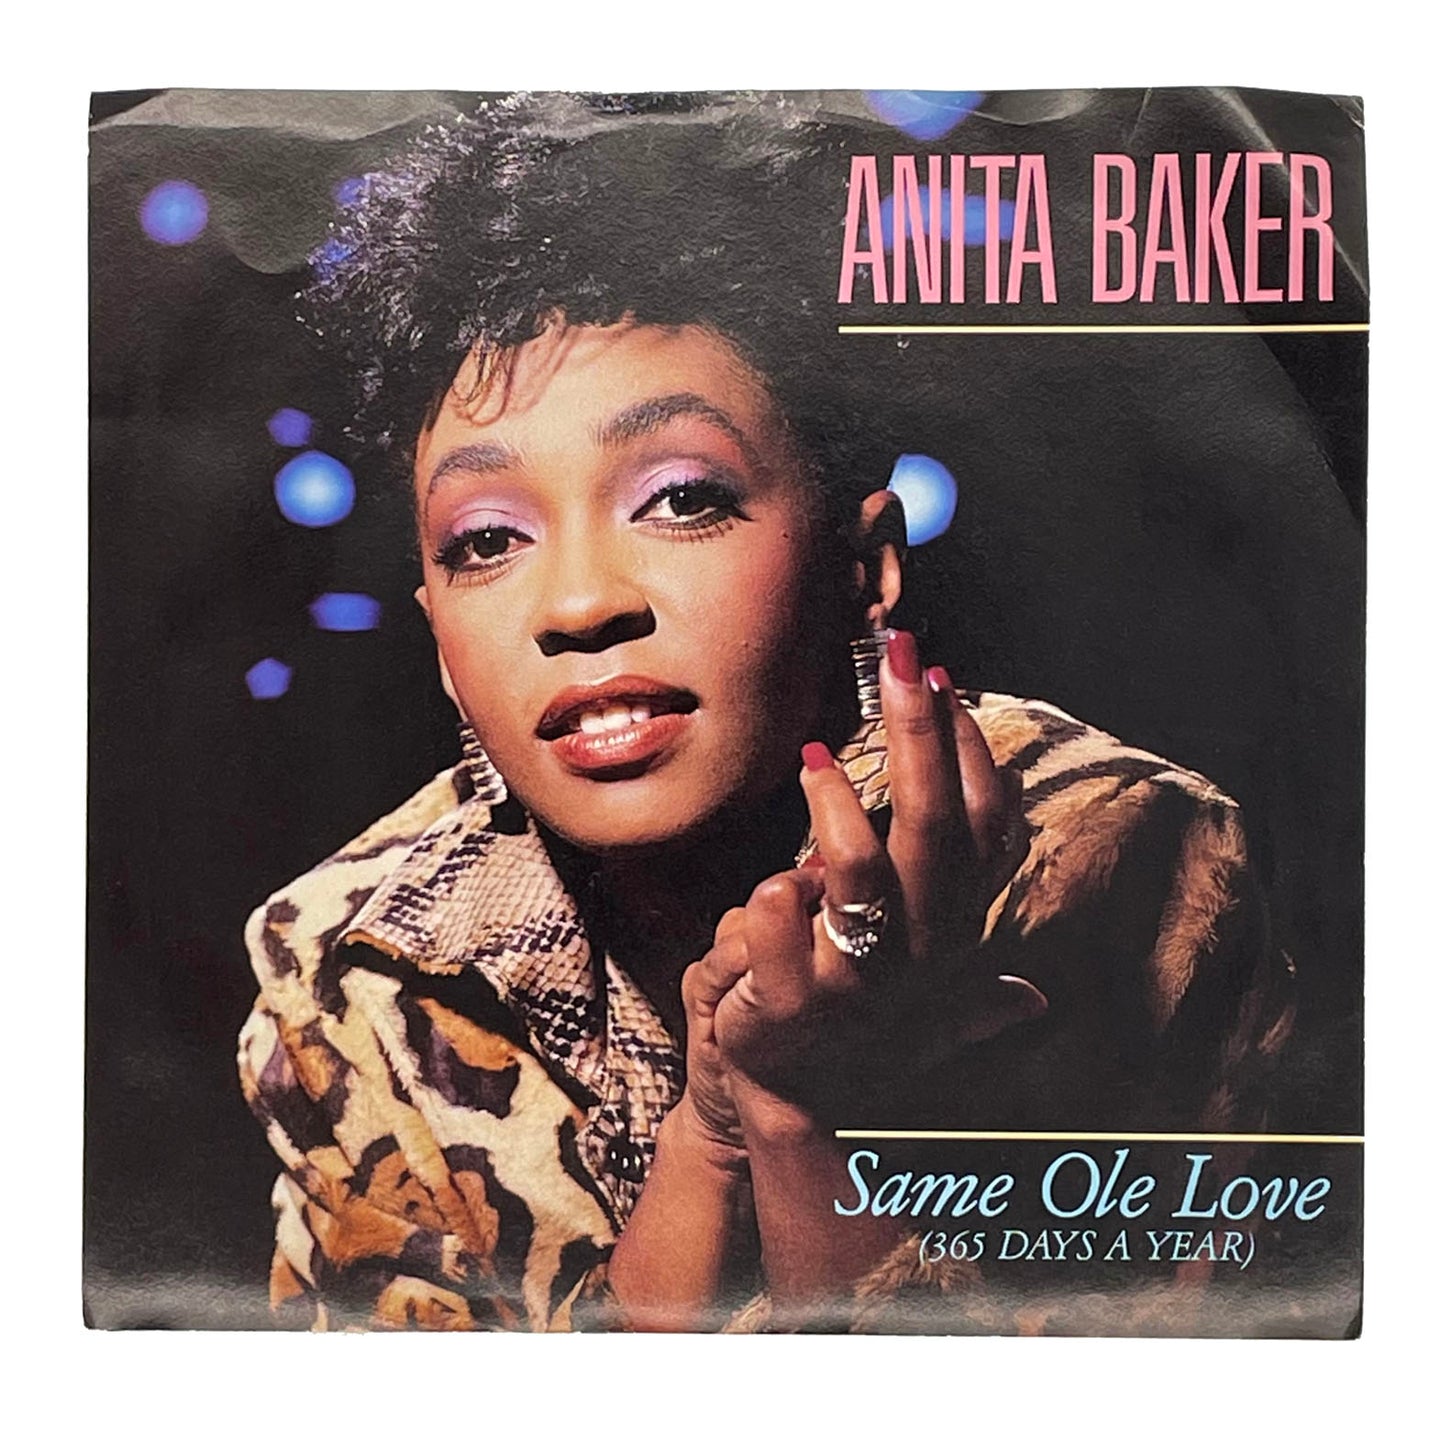 Anita Baker : SAME OLE LOVE (365 DAYS A YEAR)/ SAME OLE LOVE (365 DAYS A YEAR) (LIVE VERSION)